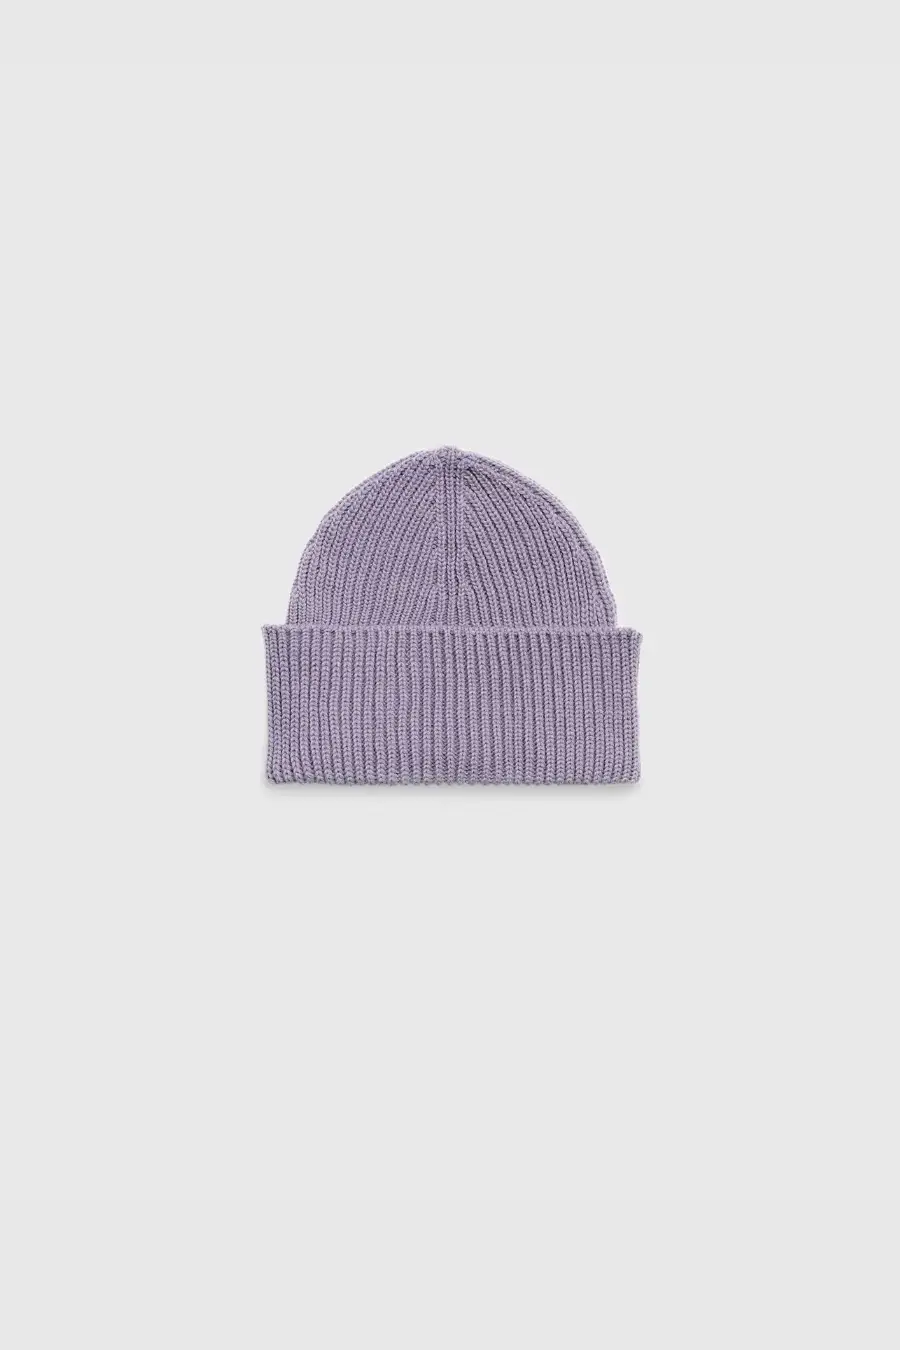 Douillet-bonnet-violet2